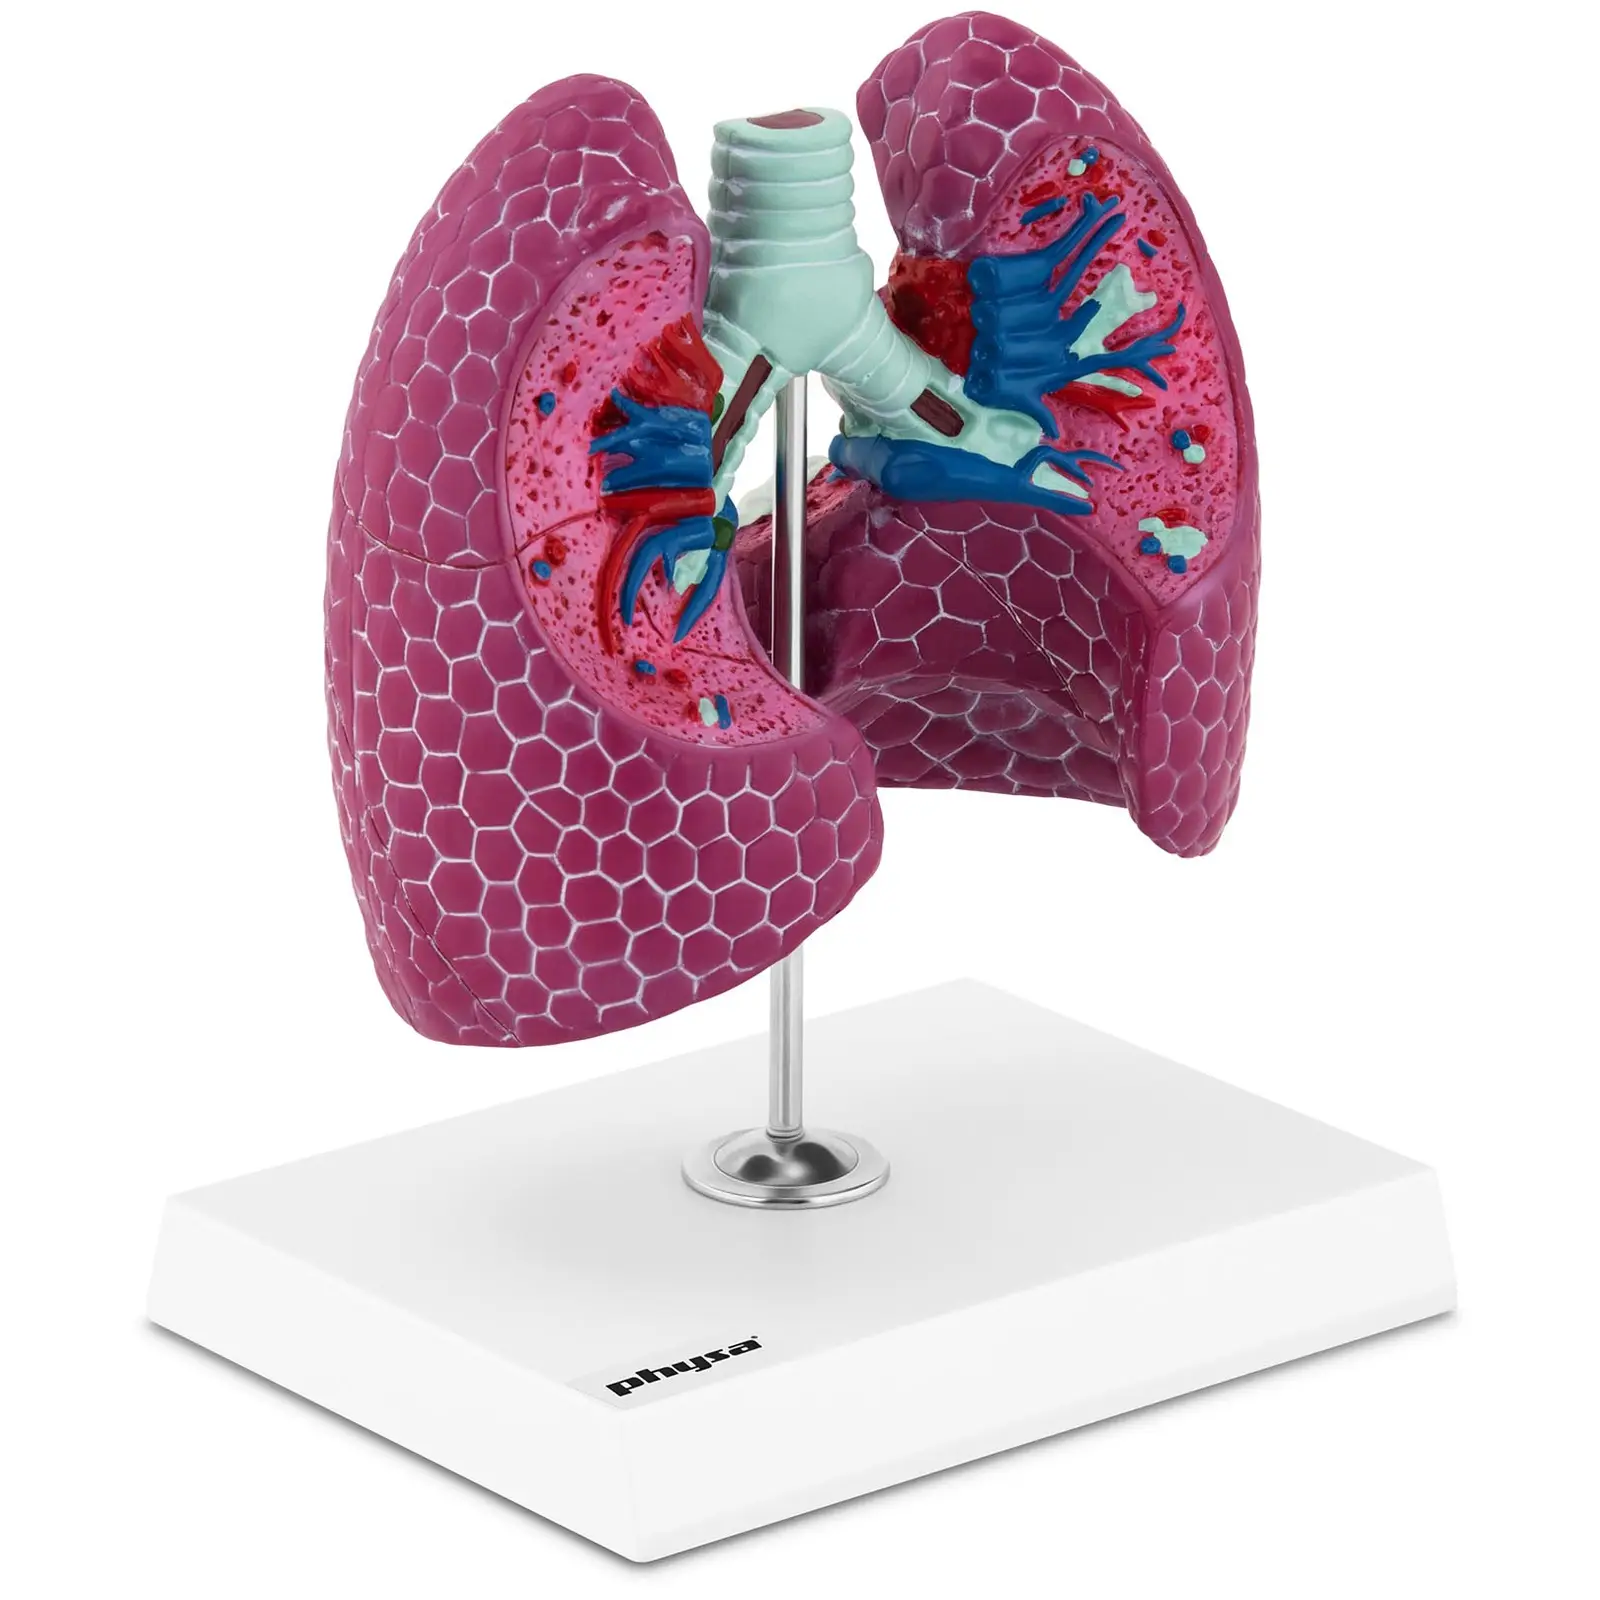 Chore płuca człowieka - model anatomiczny